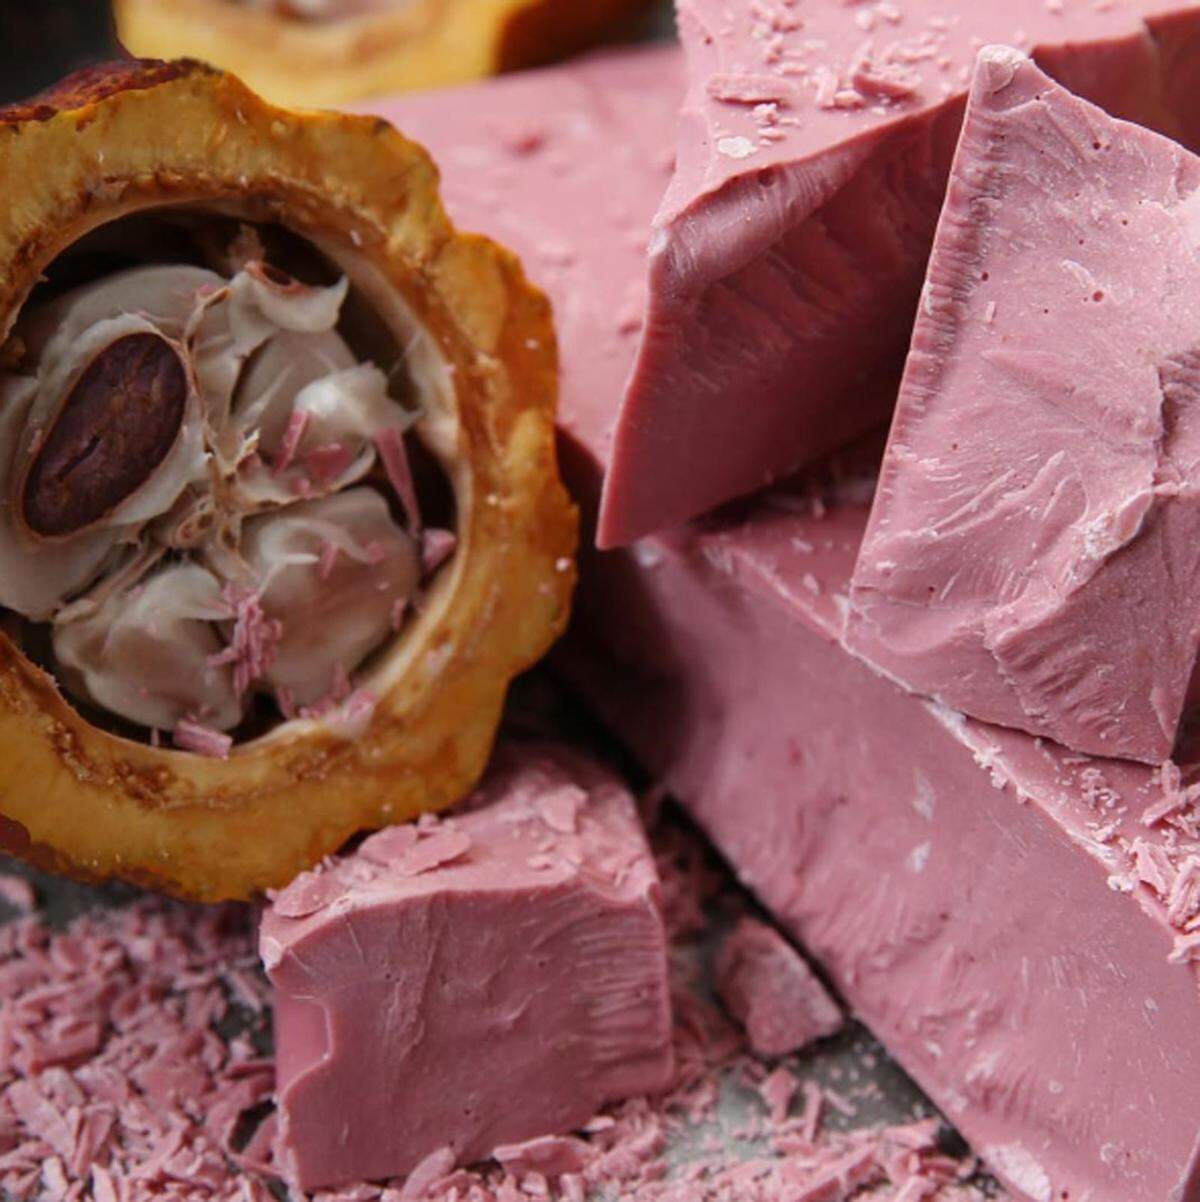 "Millennial Pink" bleibt uns auch 2018 erhalten. Viele wird es freuen, denn es handelt sich dabei um einen sehr instagram-tauglichen Farbklecks, der sich auf mehr oder weniger natürlichen Lebensmitteln zeigen wird. Die Pink Ananas ist ein Beispiel dafür genauso wie der gerade entdeckte rosa Kakao.